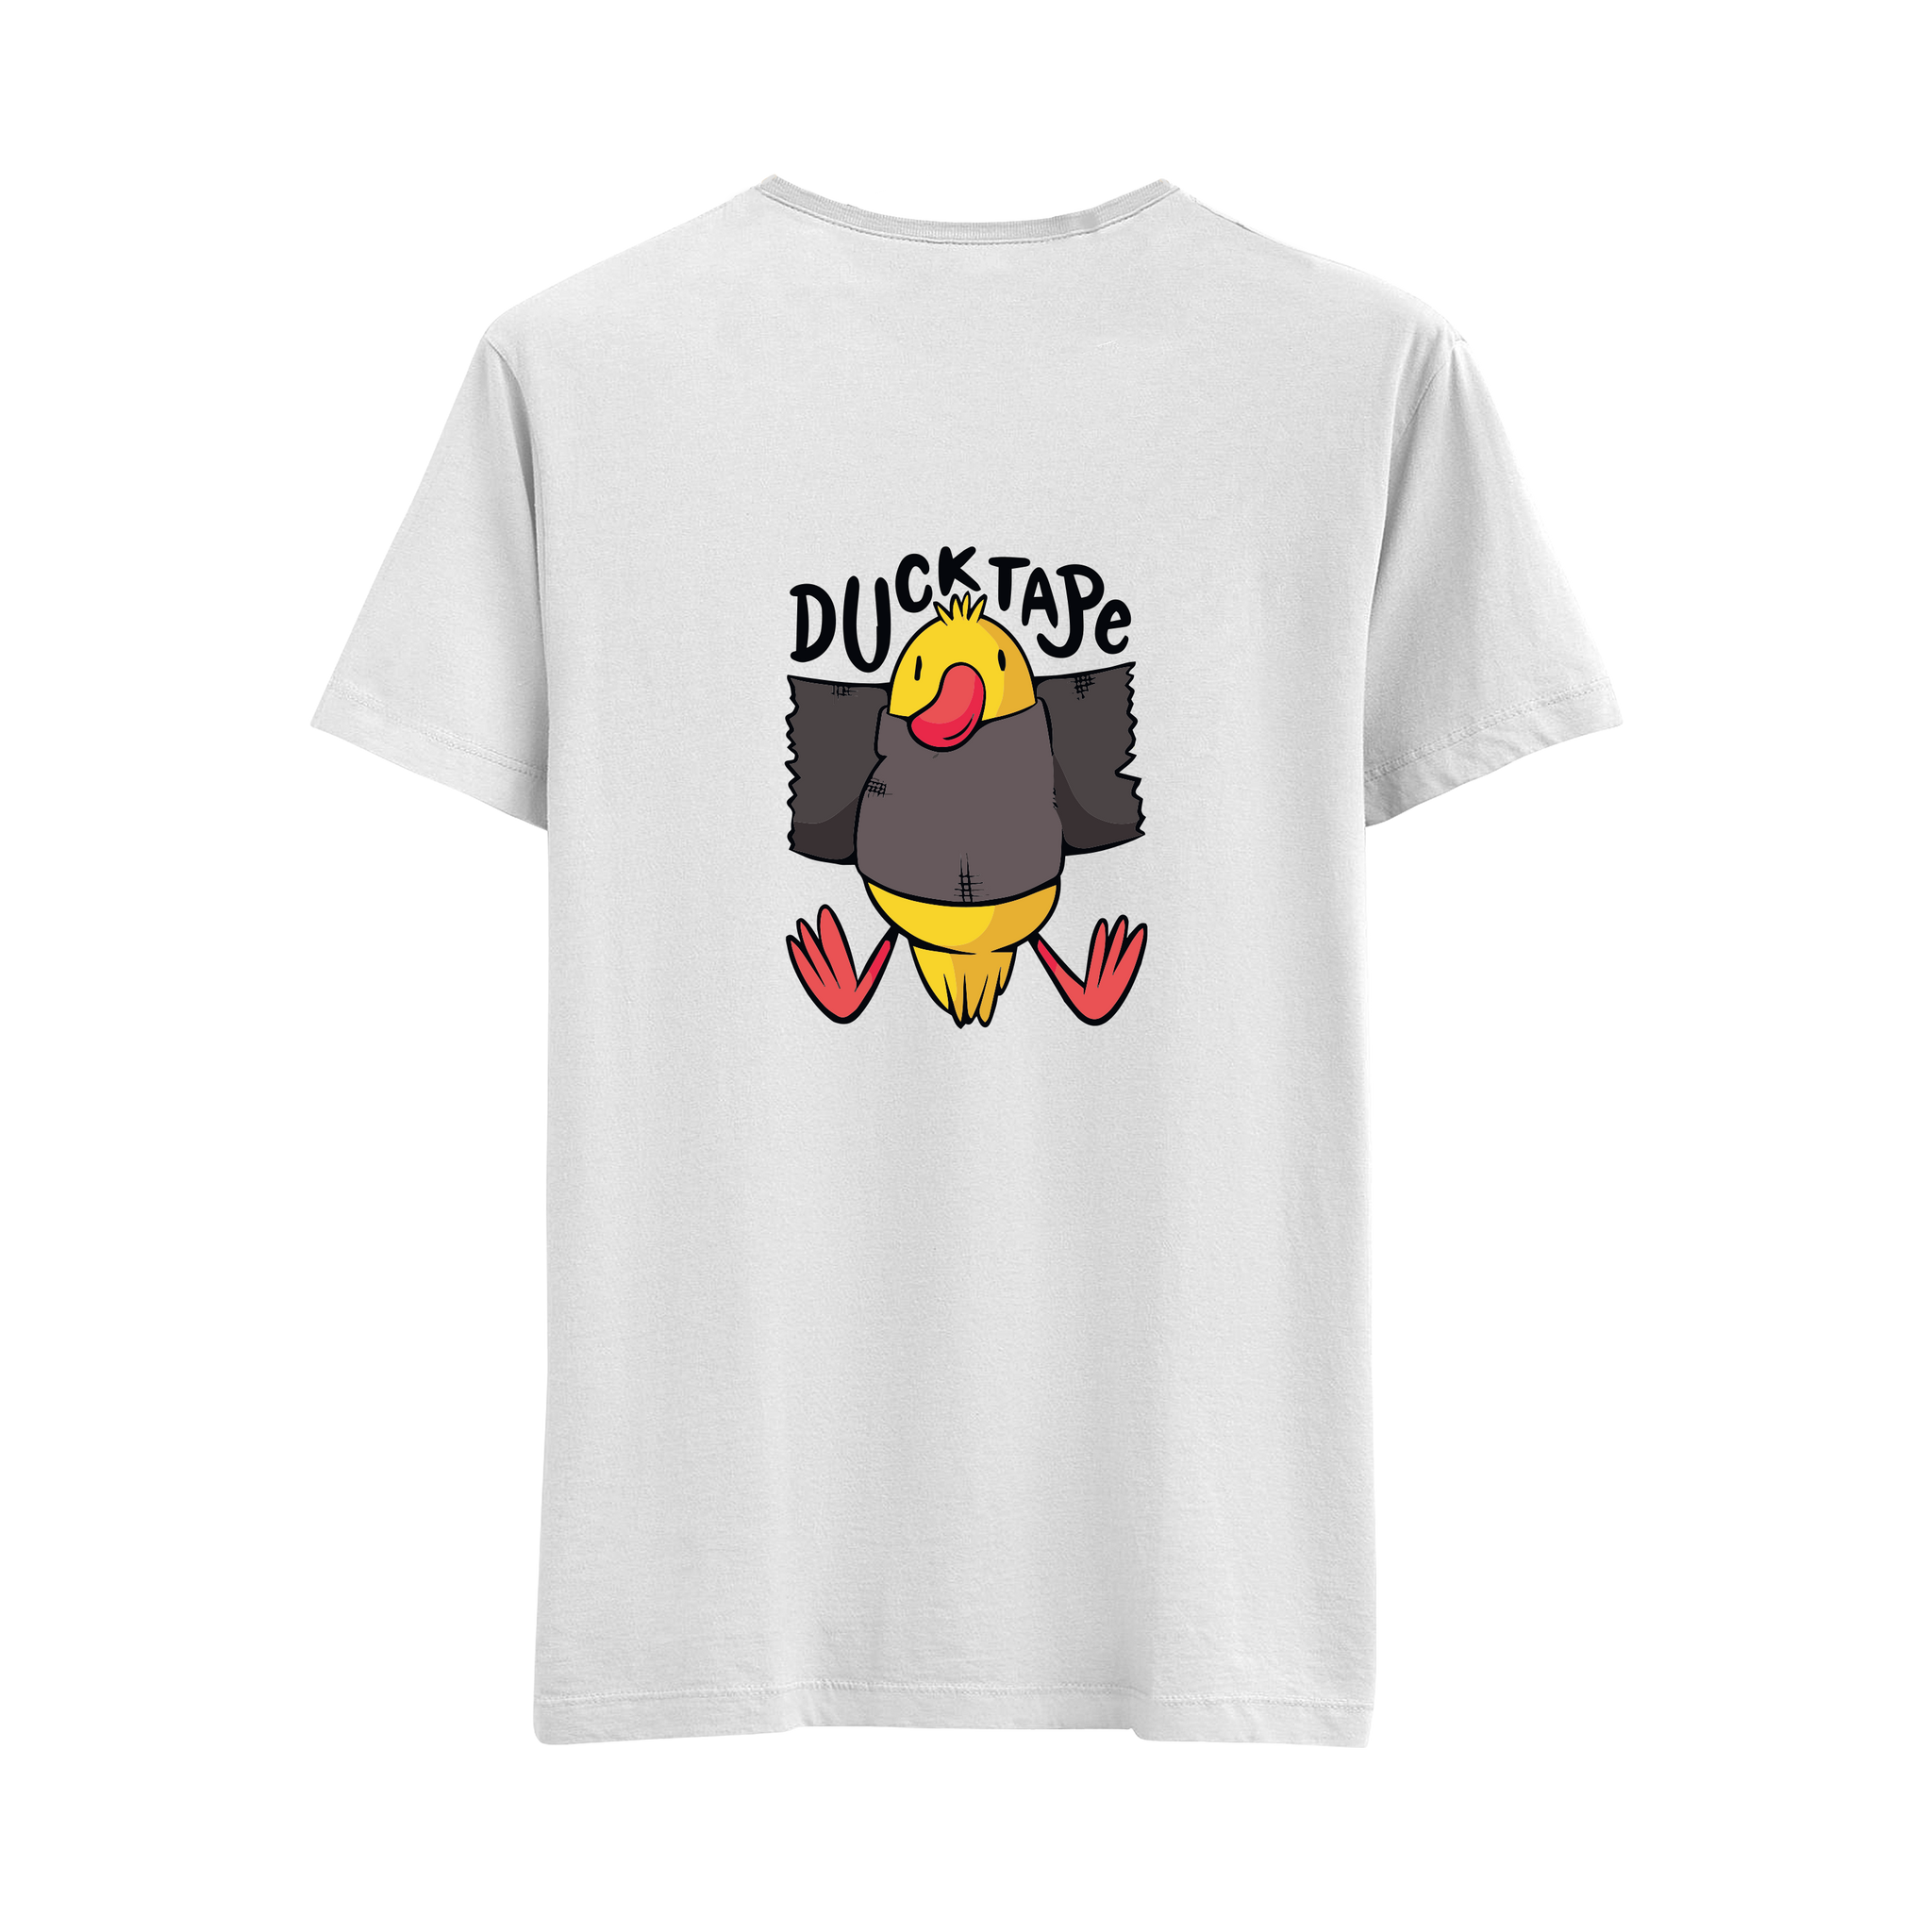 Ducktape - Regular T-Shirt